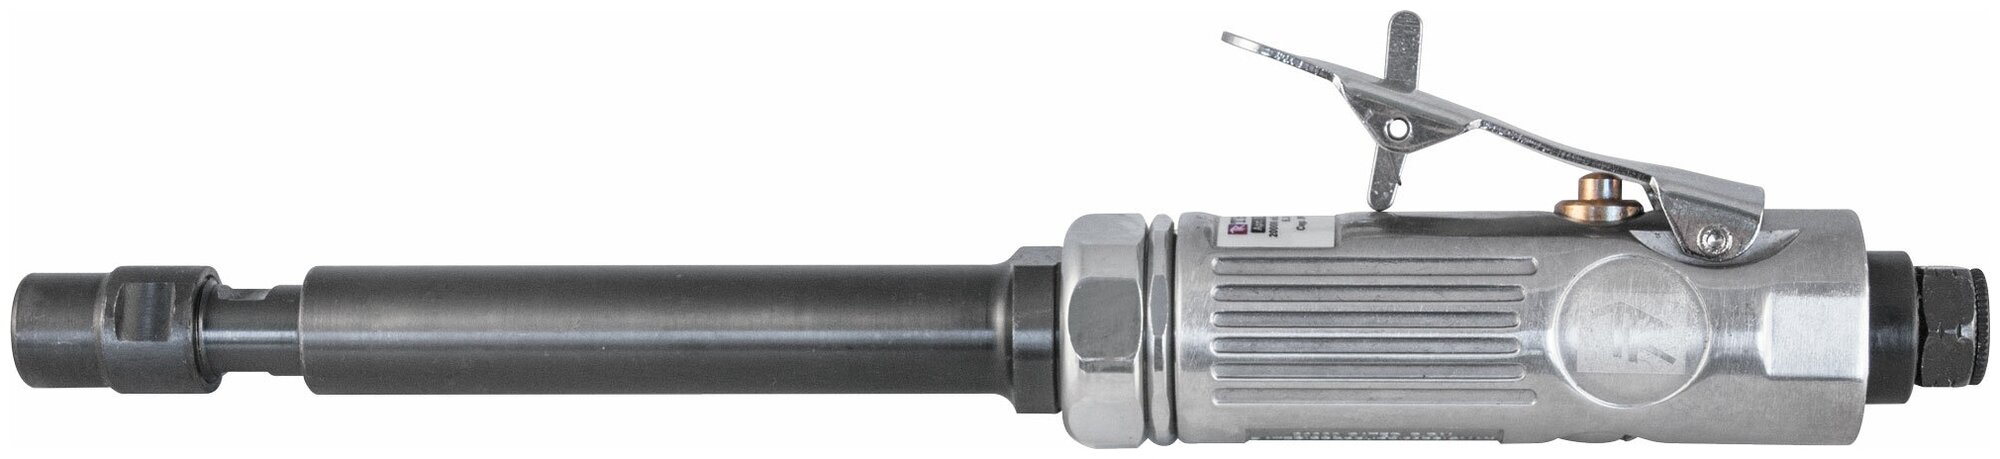 EADG6020 Бормашинка пневматическая удлиненная 20000 об/мин., патрон 6 мм, L-285 мм